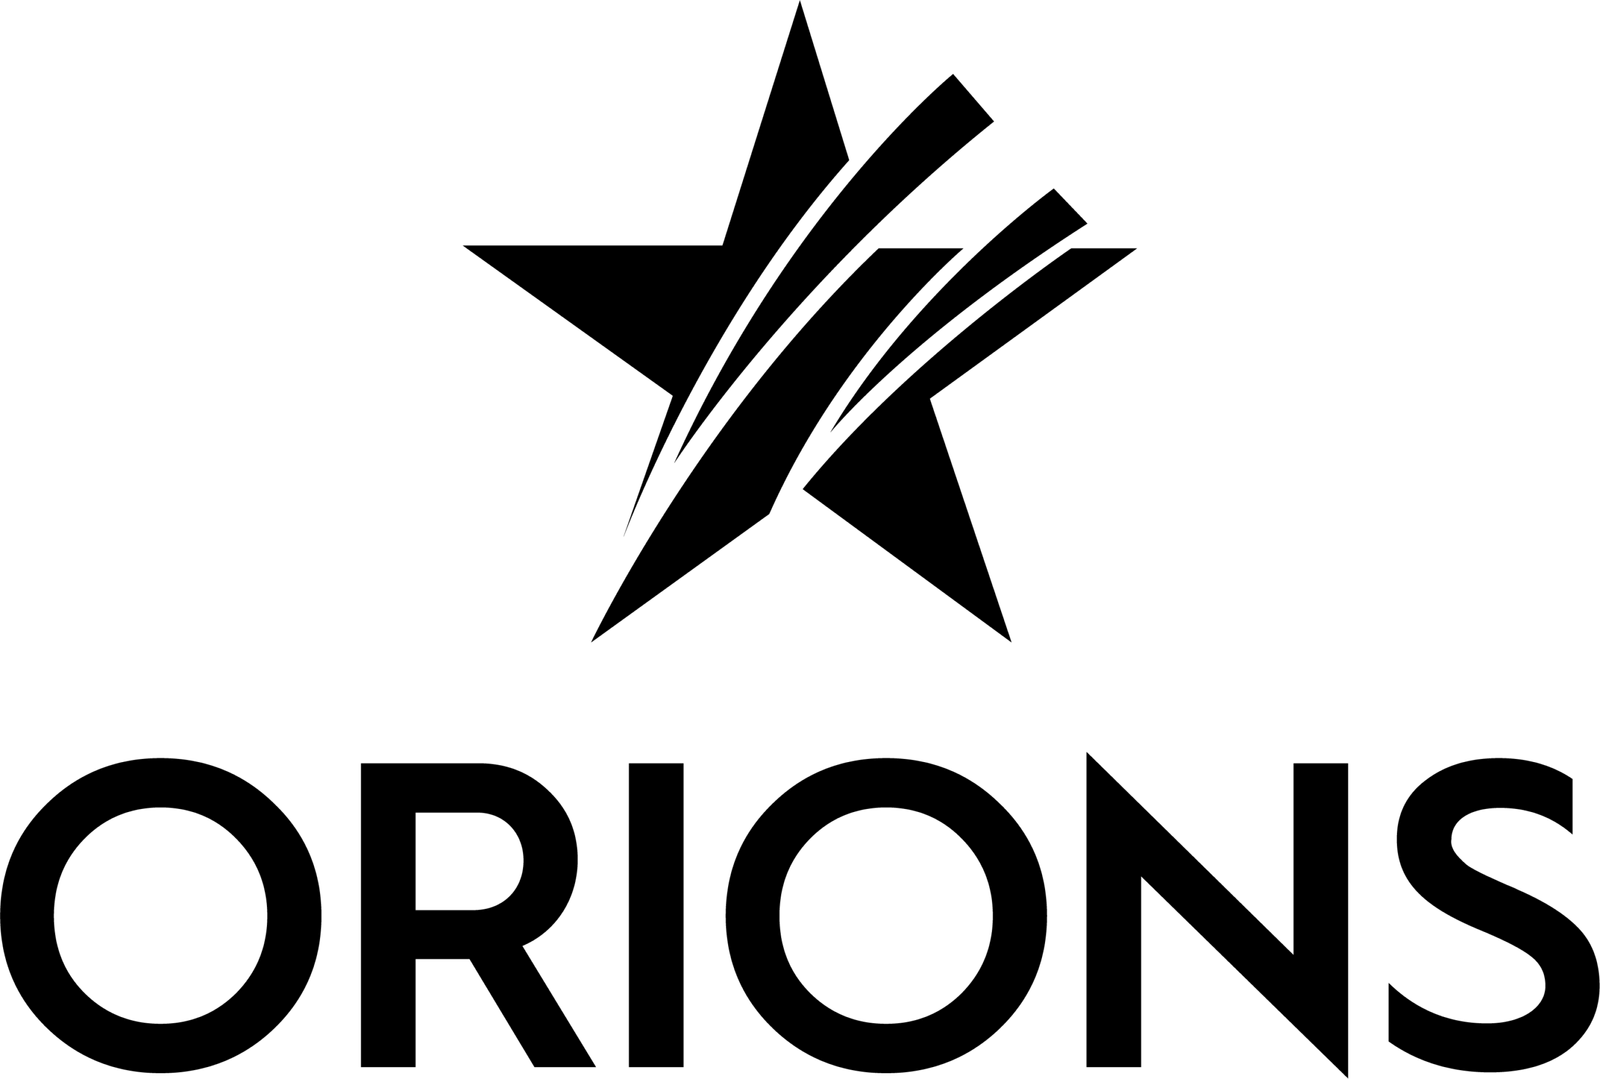 Orions fullstendige logo med teksten og stjerne-symbolet på hvit bakgrunn